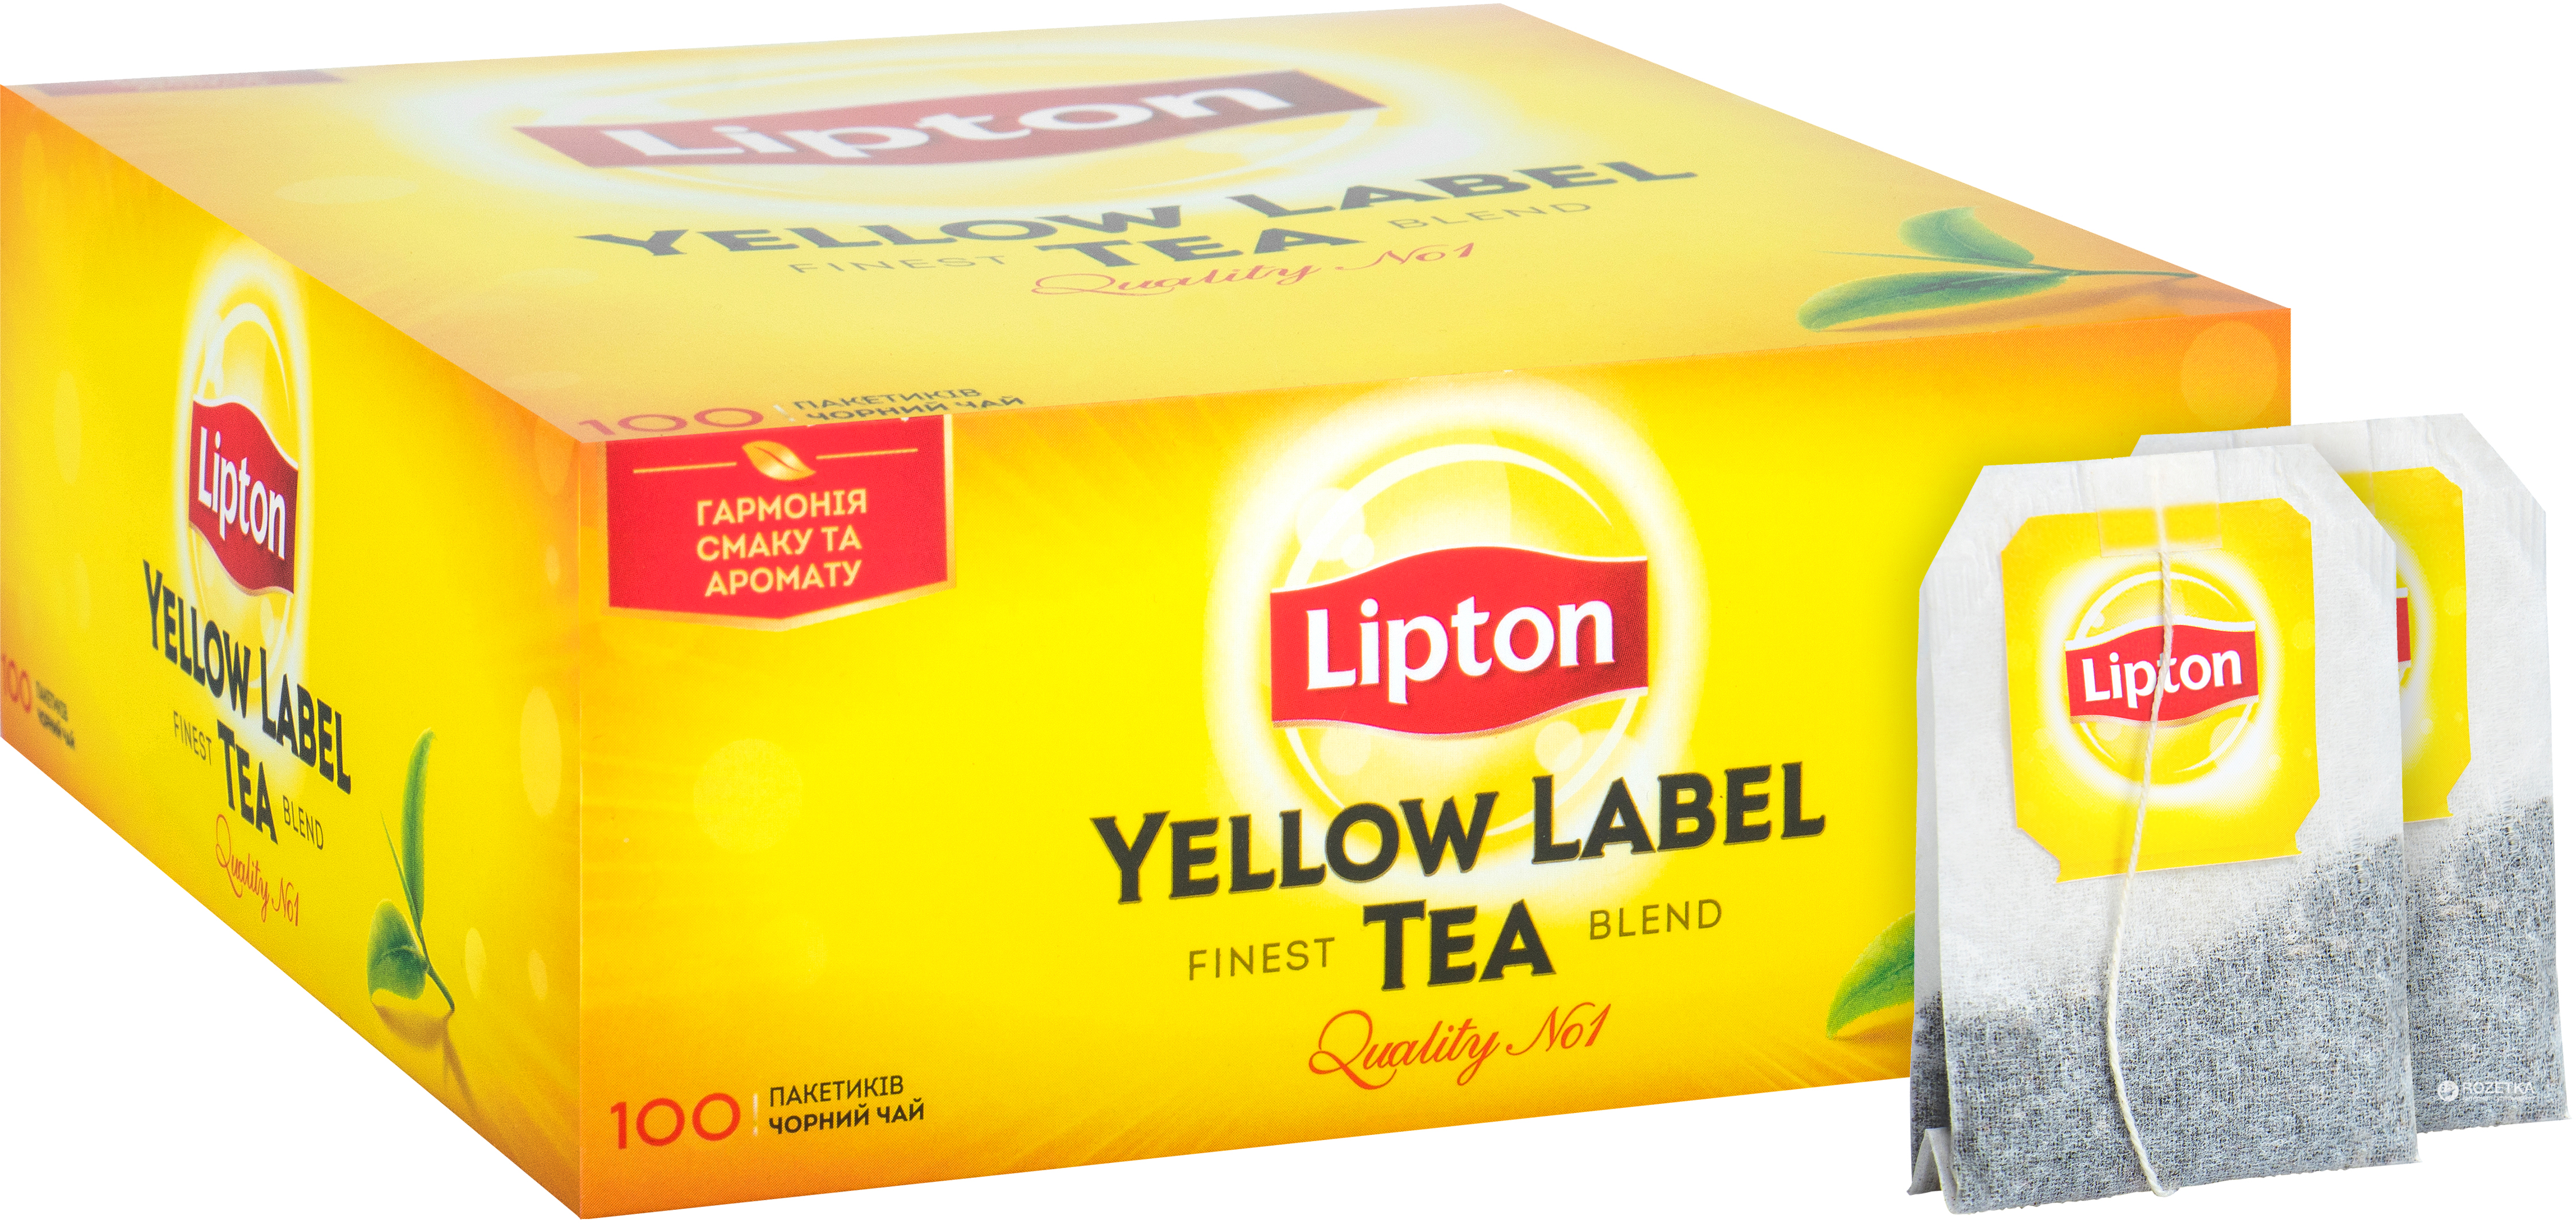 Липтон большой. Чай черный Lipton Yellow Label, 100пак. Липтон Yellow Label 100 пакетиков. Типтон чай 100 пакетиков. Чай Липтон Yellow Label (Юбилейный)100 пак.